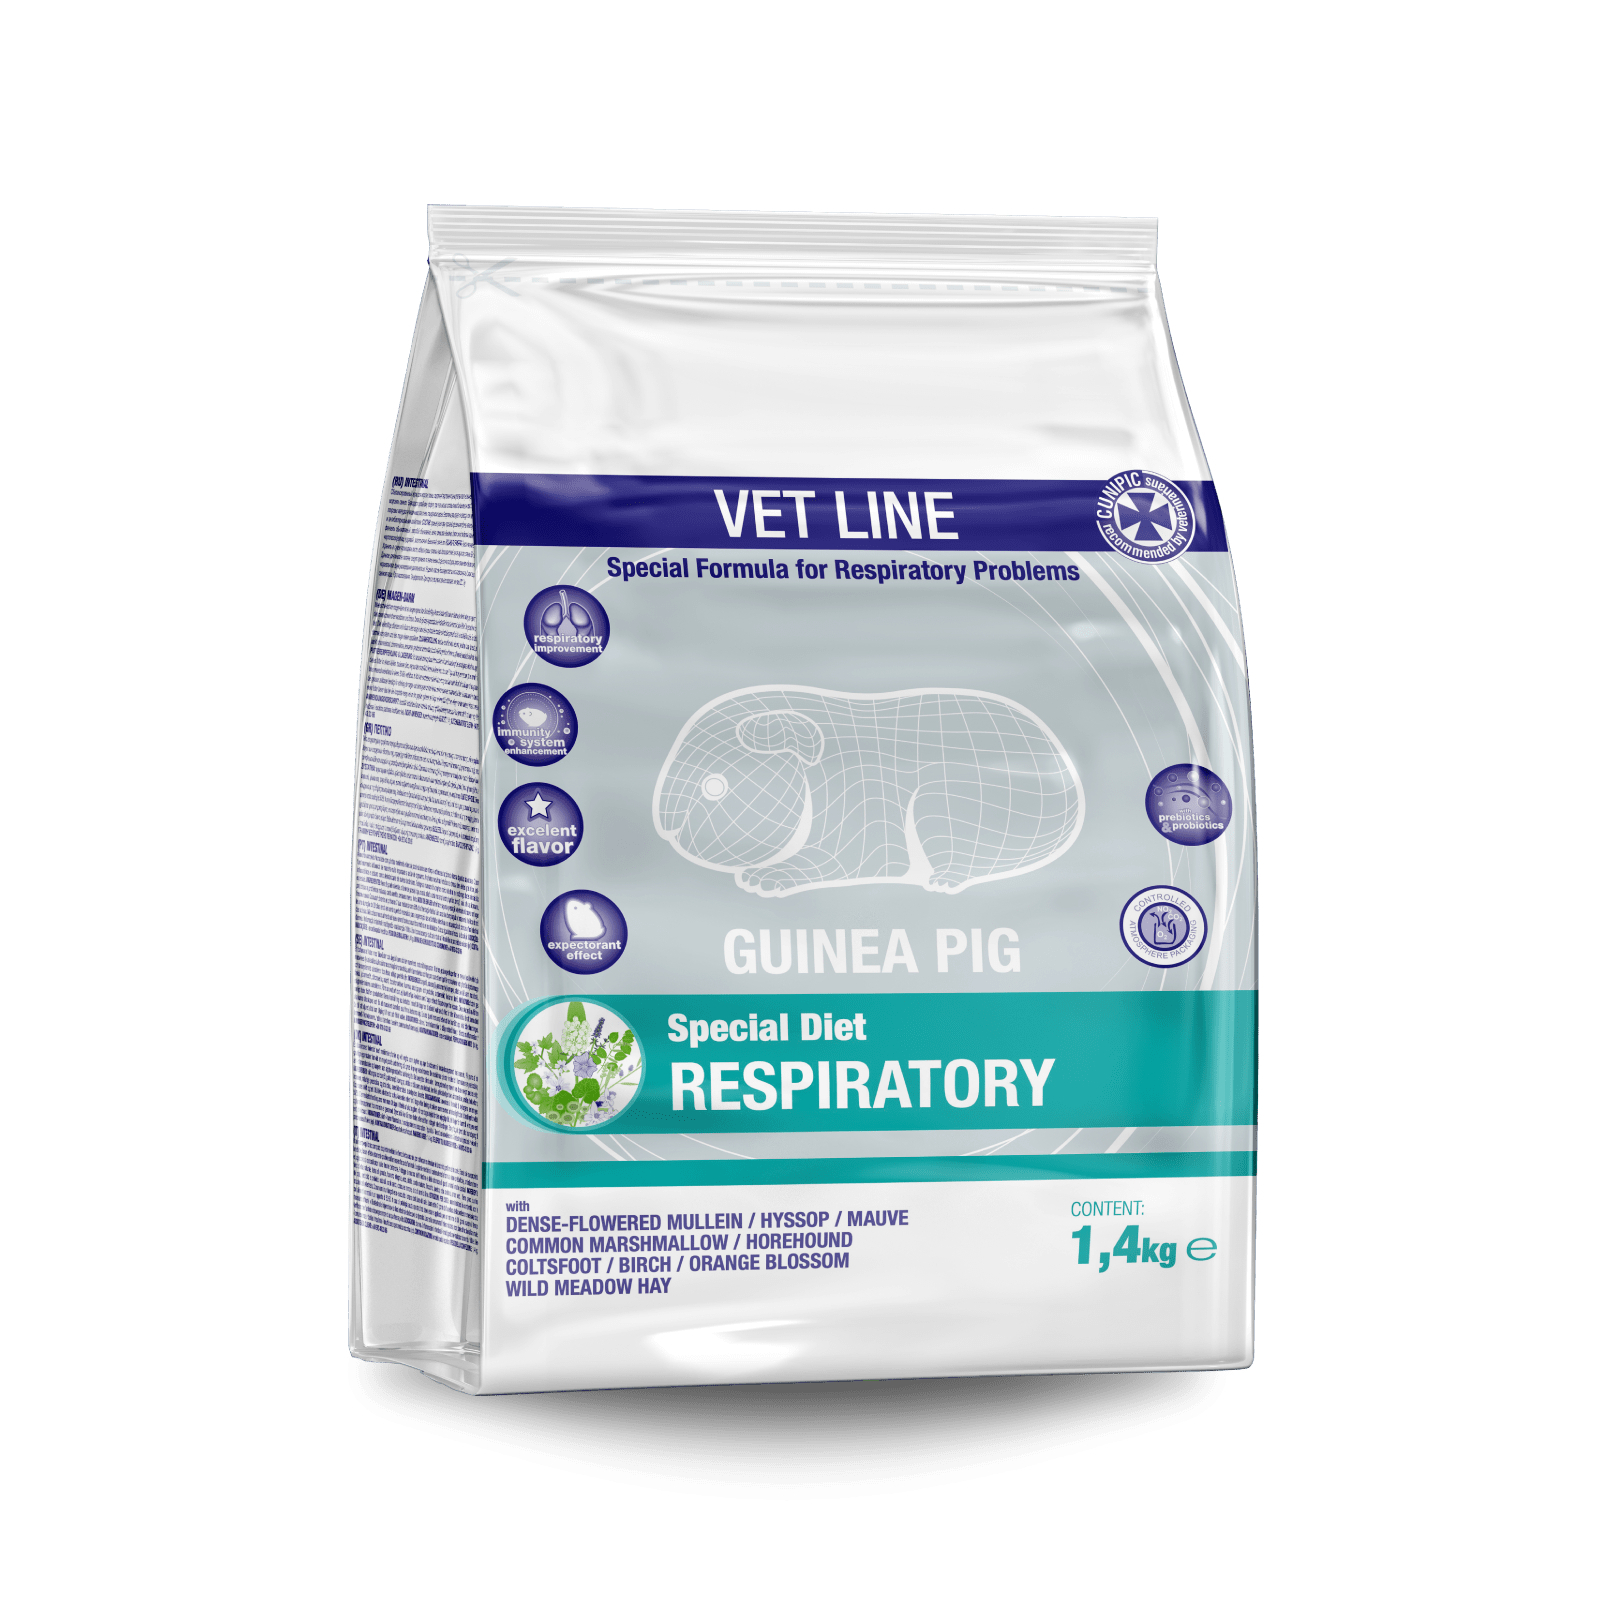 Cunipic Vetline Respiratory Formula zur Stärkung der Atemwege von Meerschweinchen